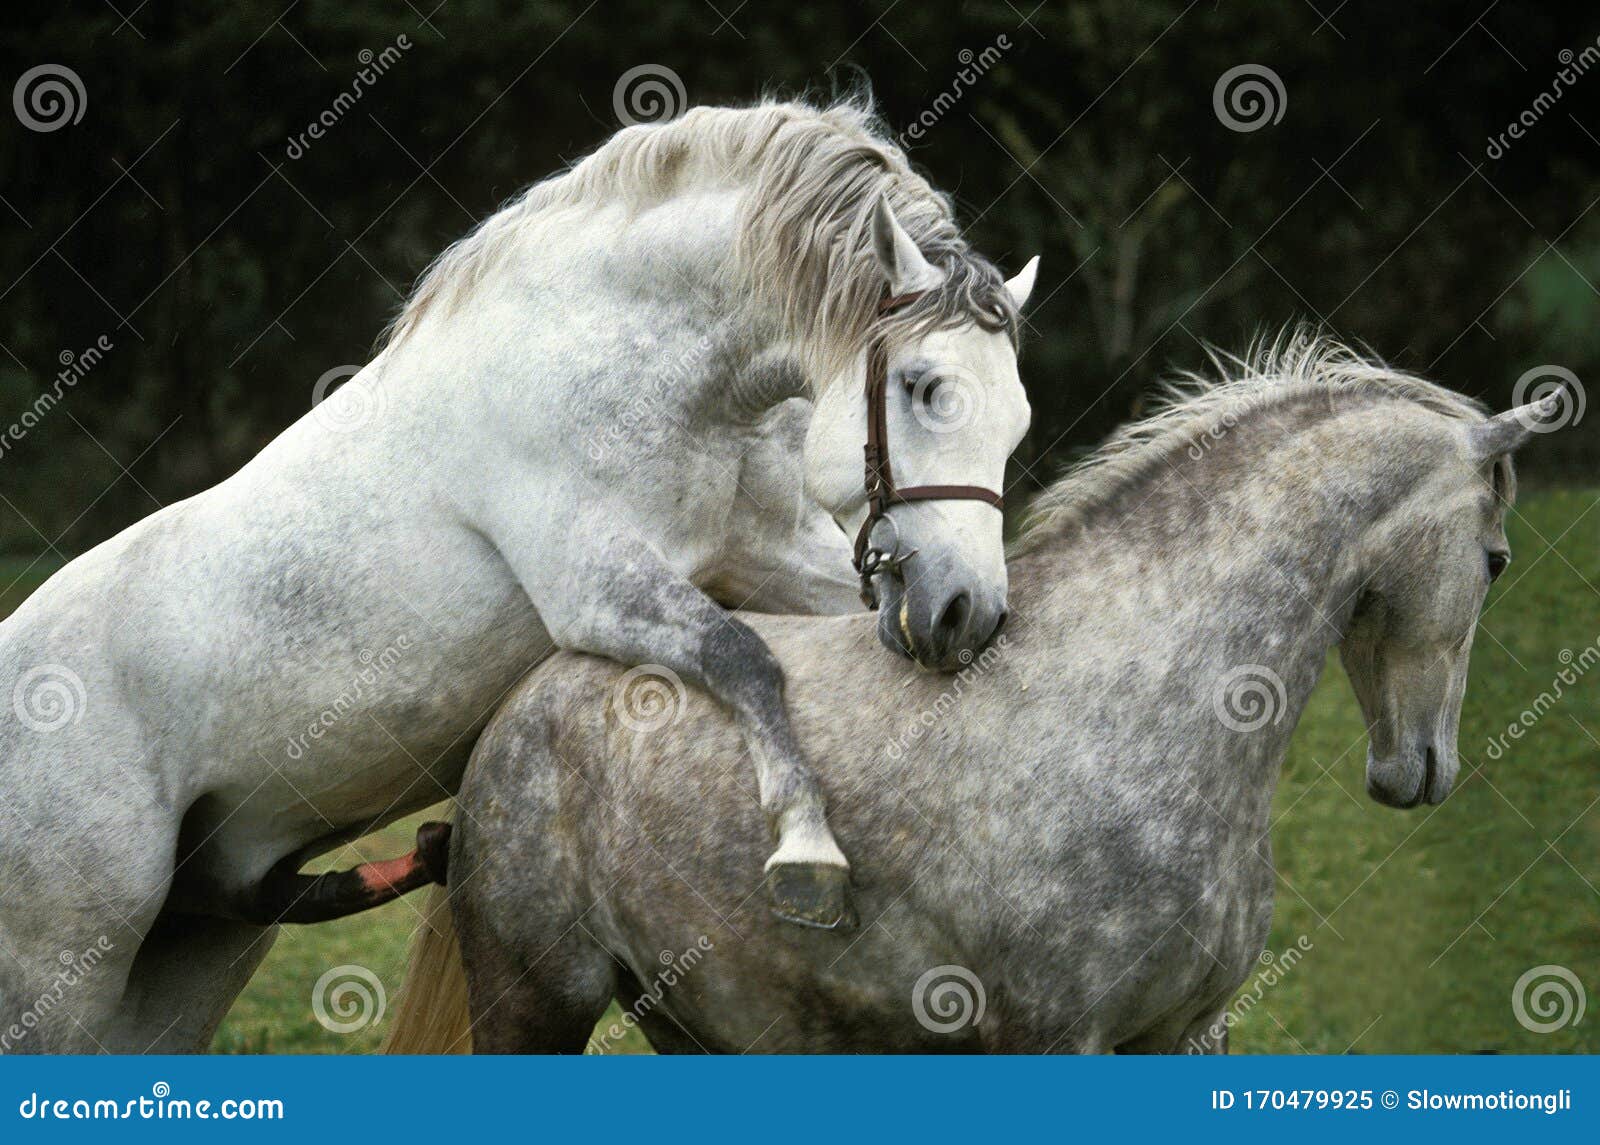 конь трахает осла или коня фото 108